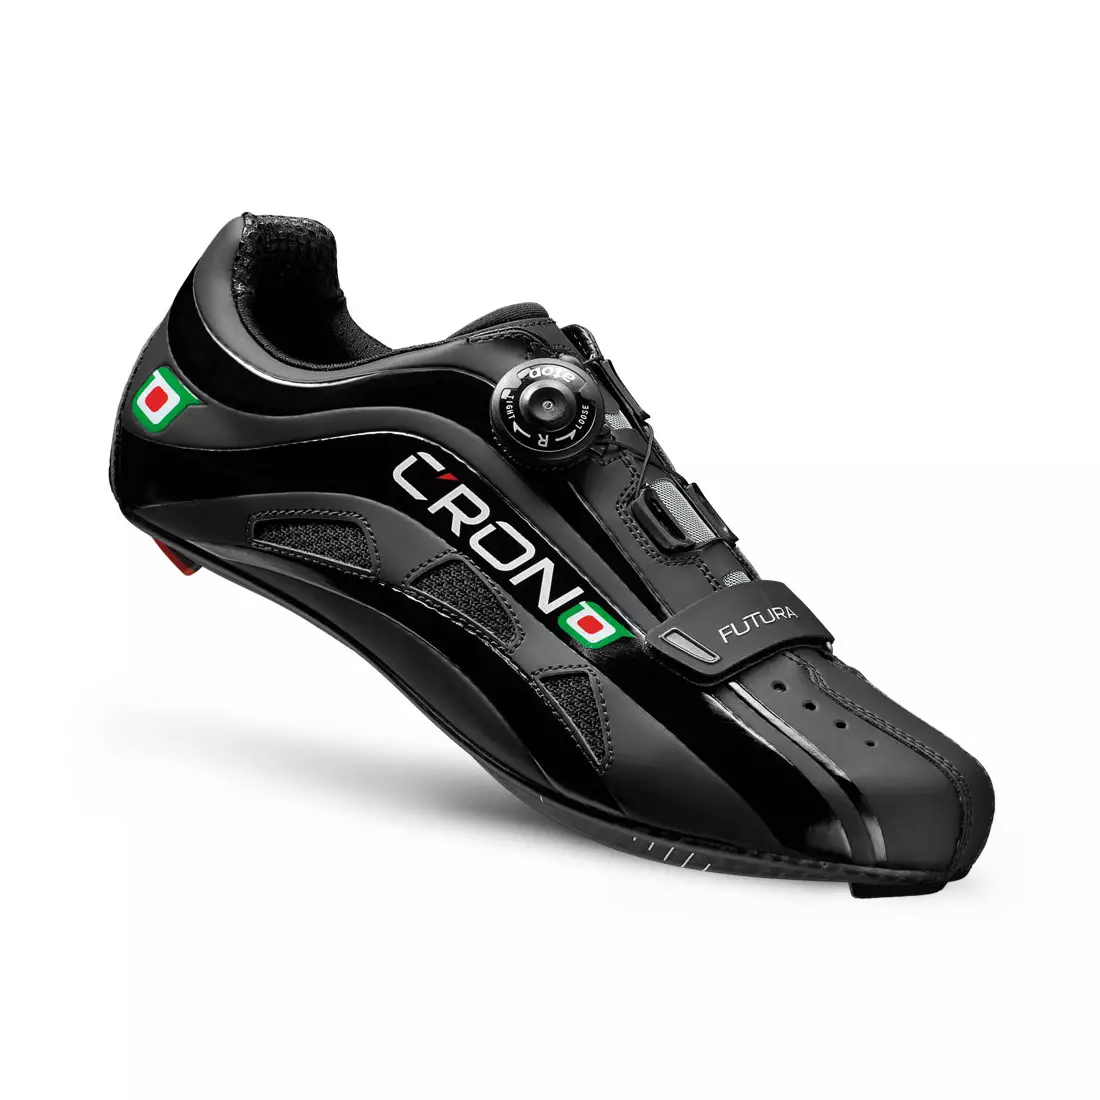 CRONO FUTURA NYLON - road cycling shoes - color: Black